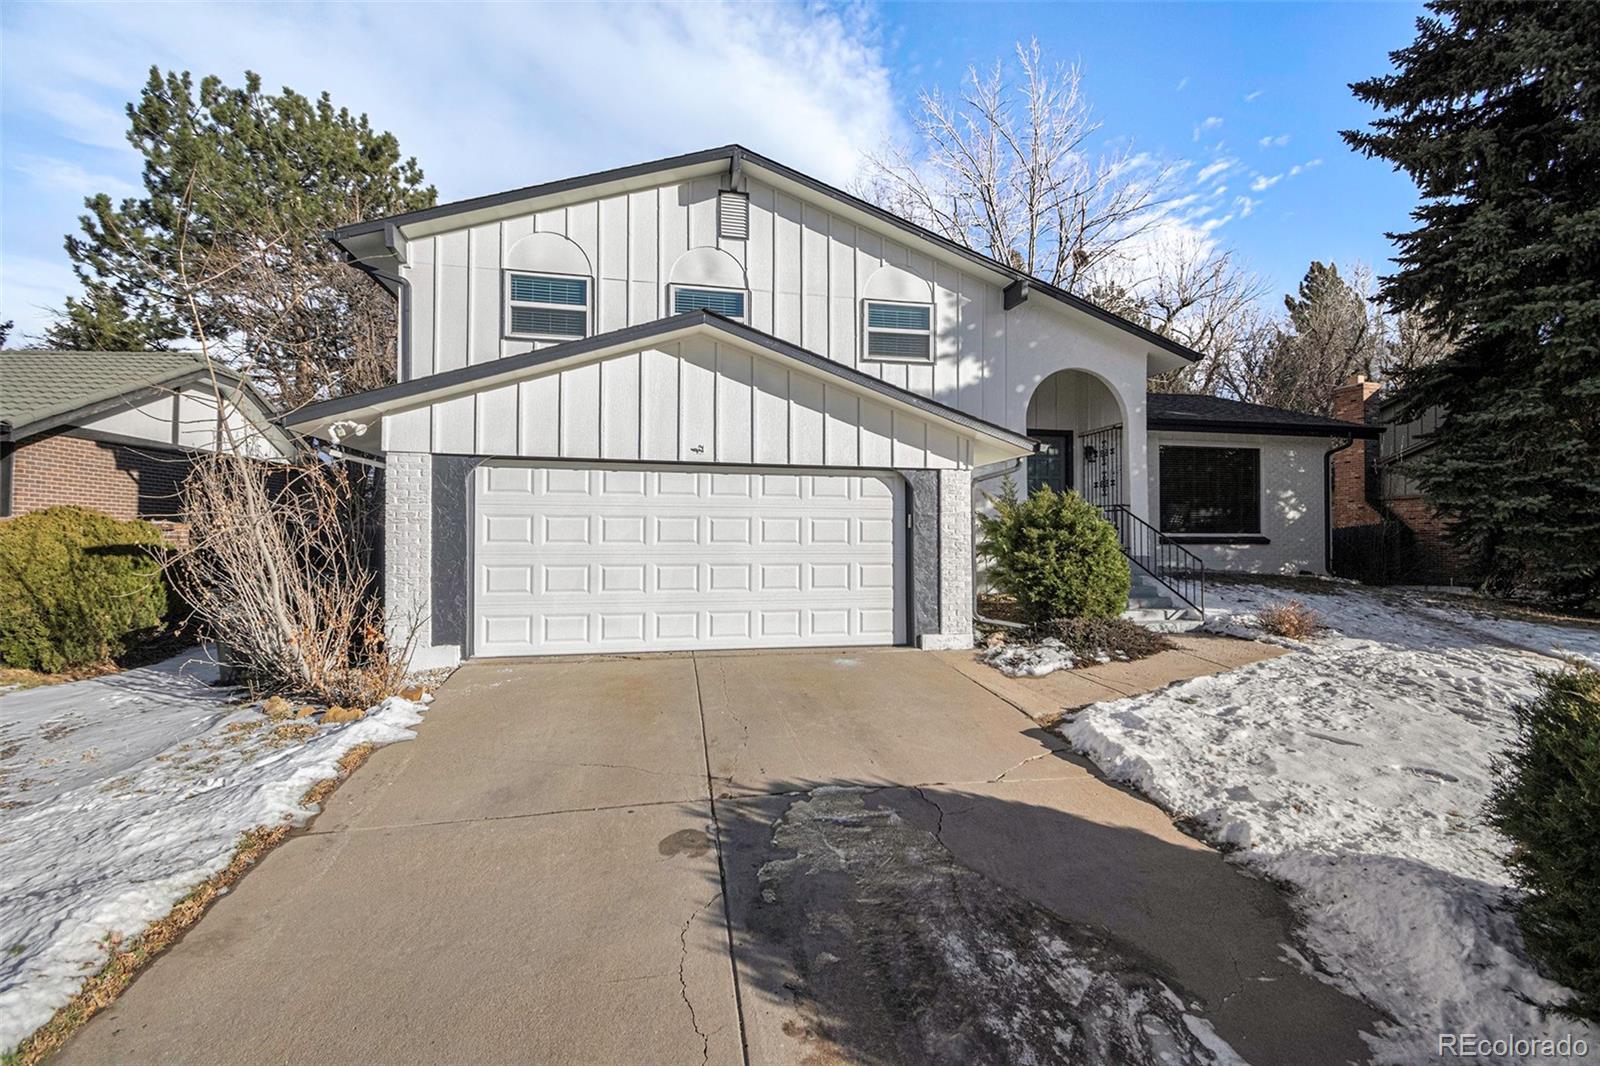 4052 s quebec street, Denver sold home. Closed on 2024-03-15 for $795,000.